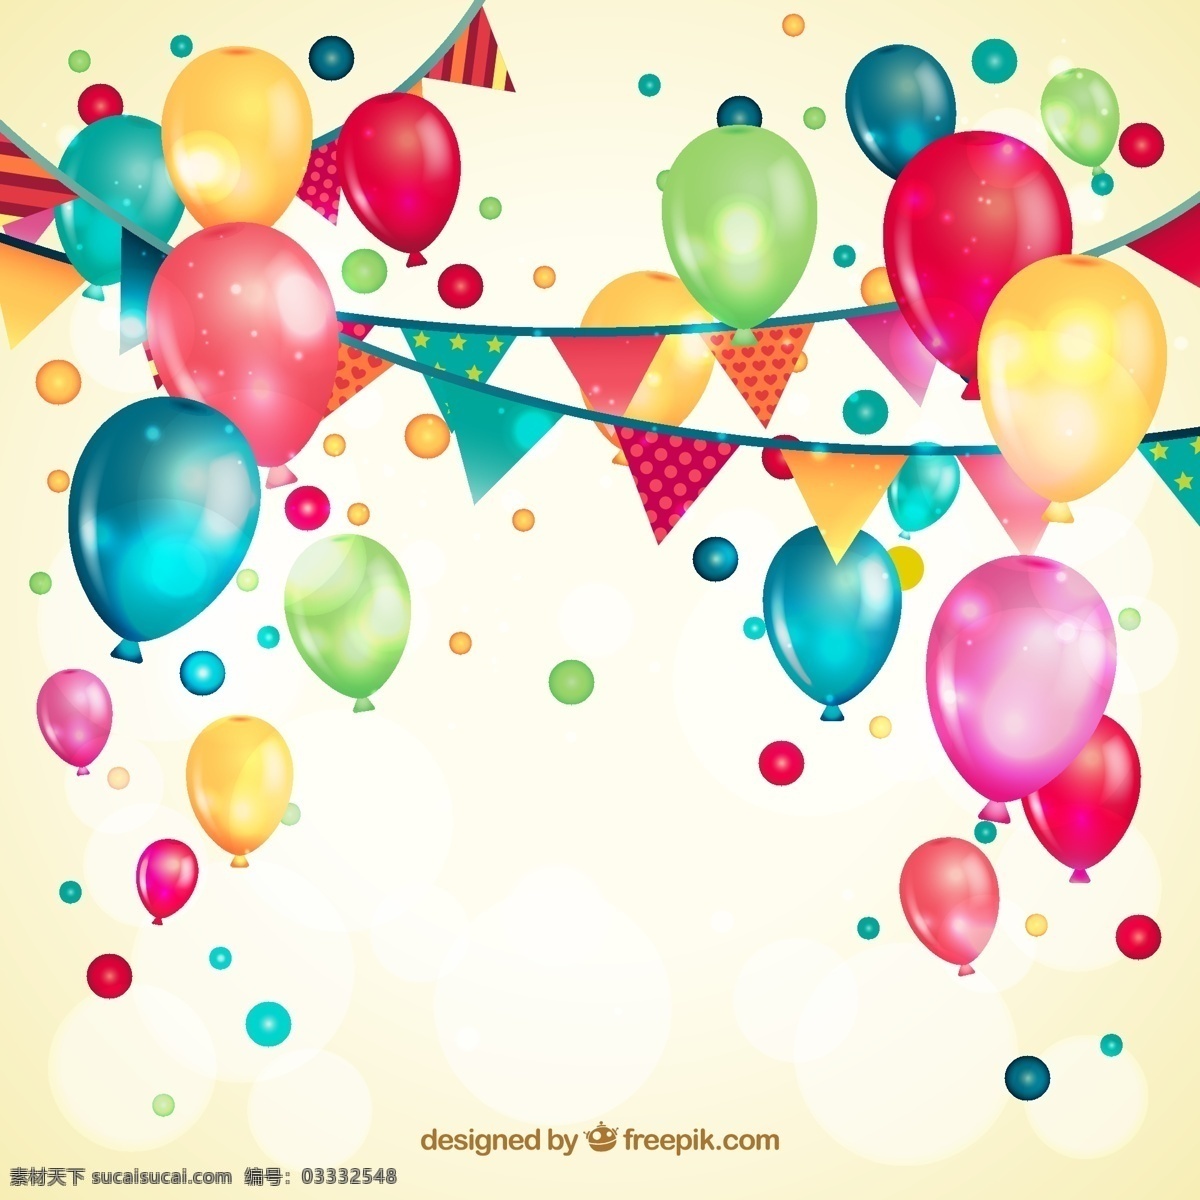 生日派对 节日气球 节日庆典 彩旗 缤纷气球 生活百科 生活用品